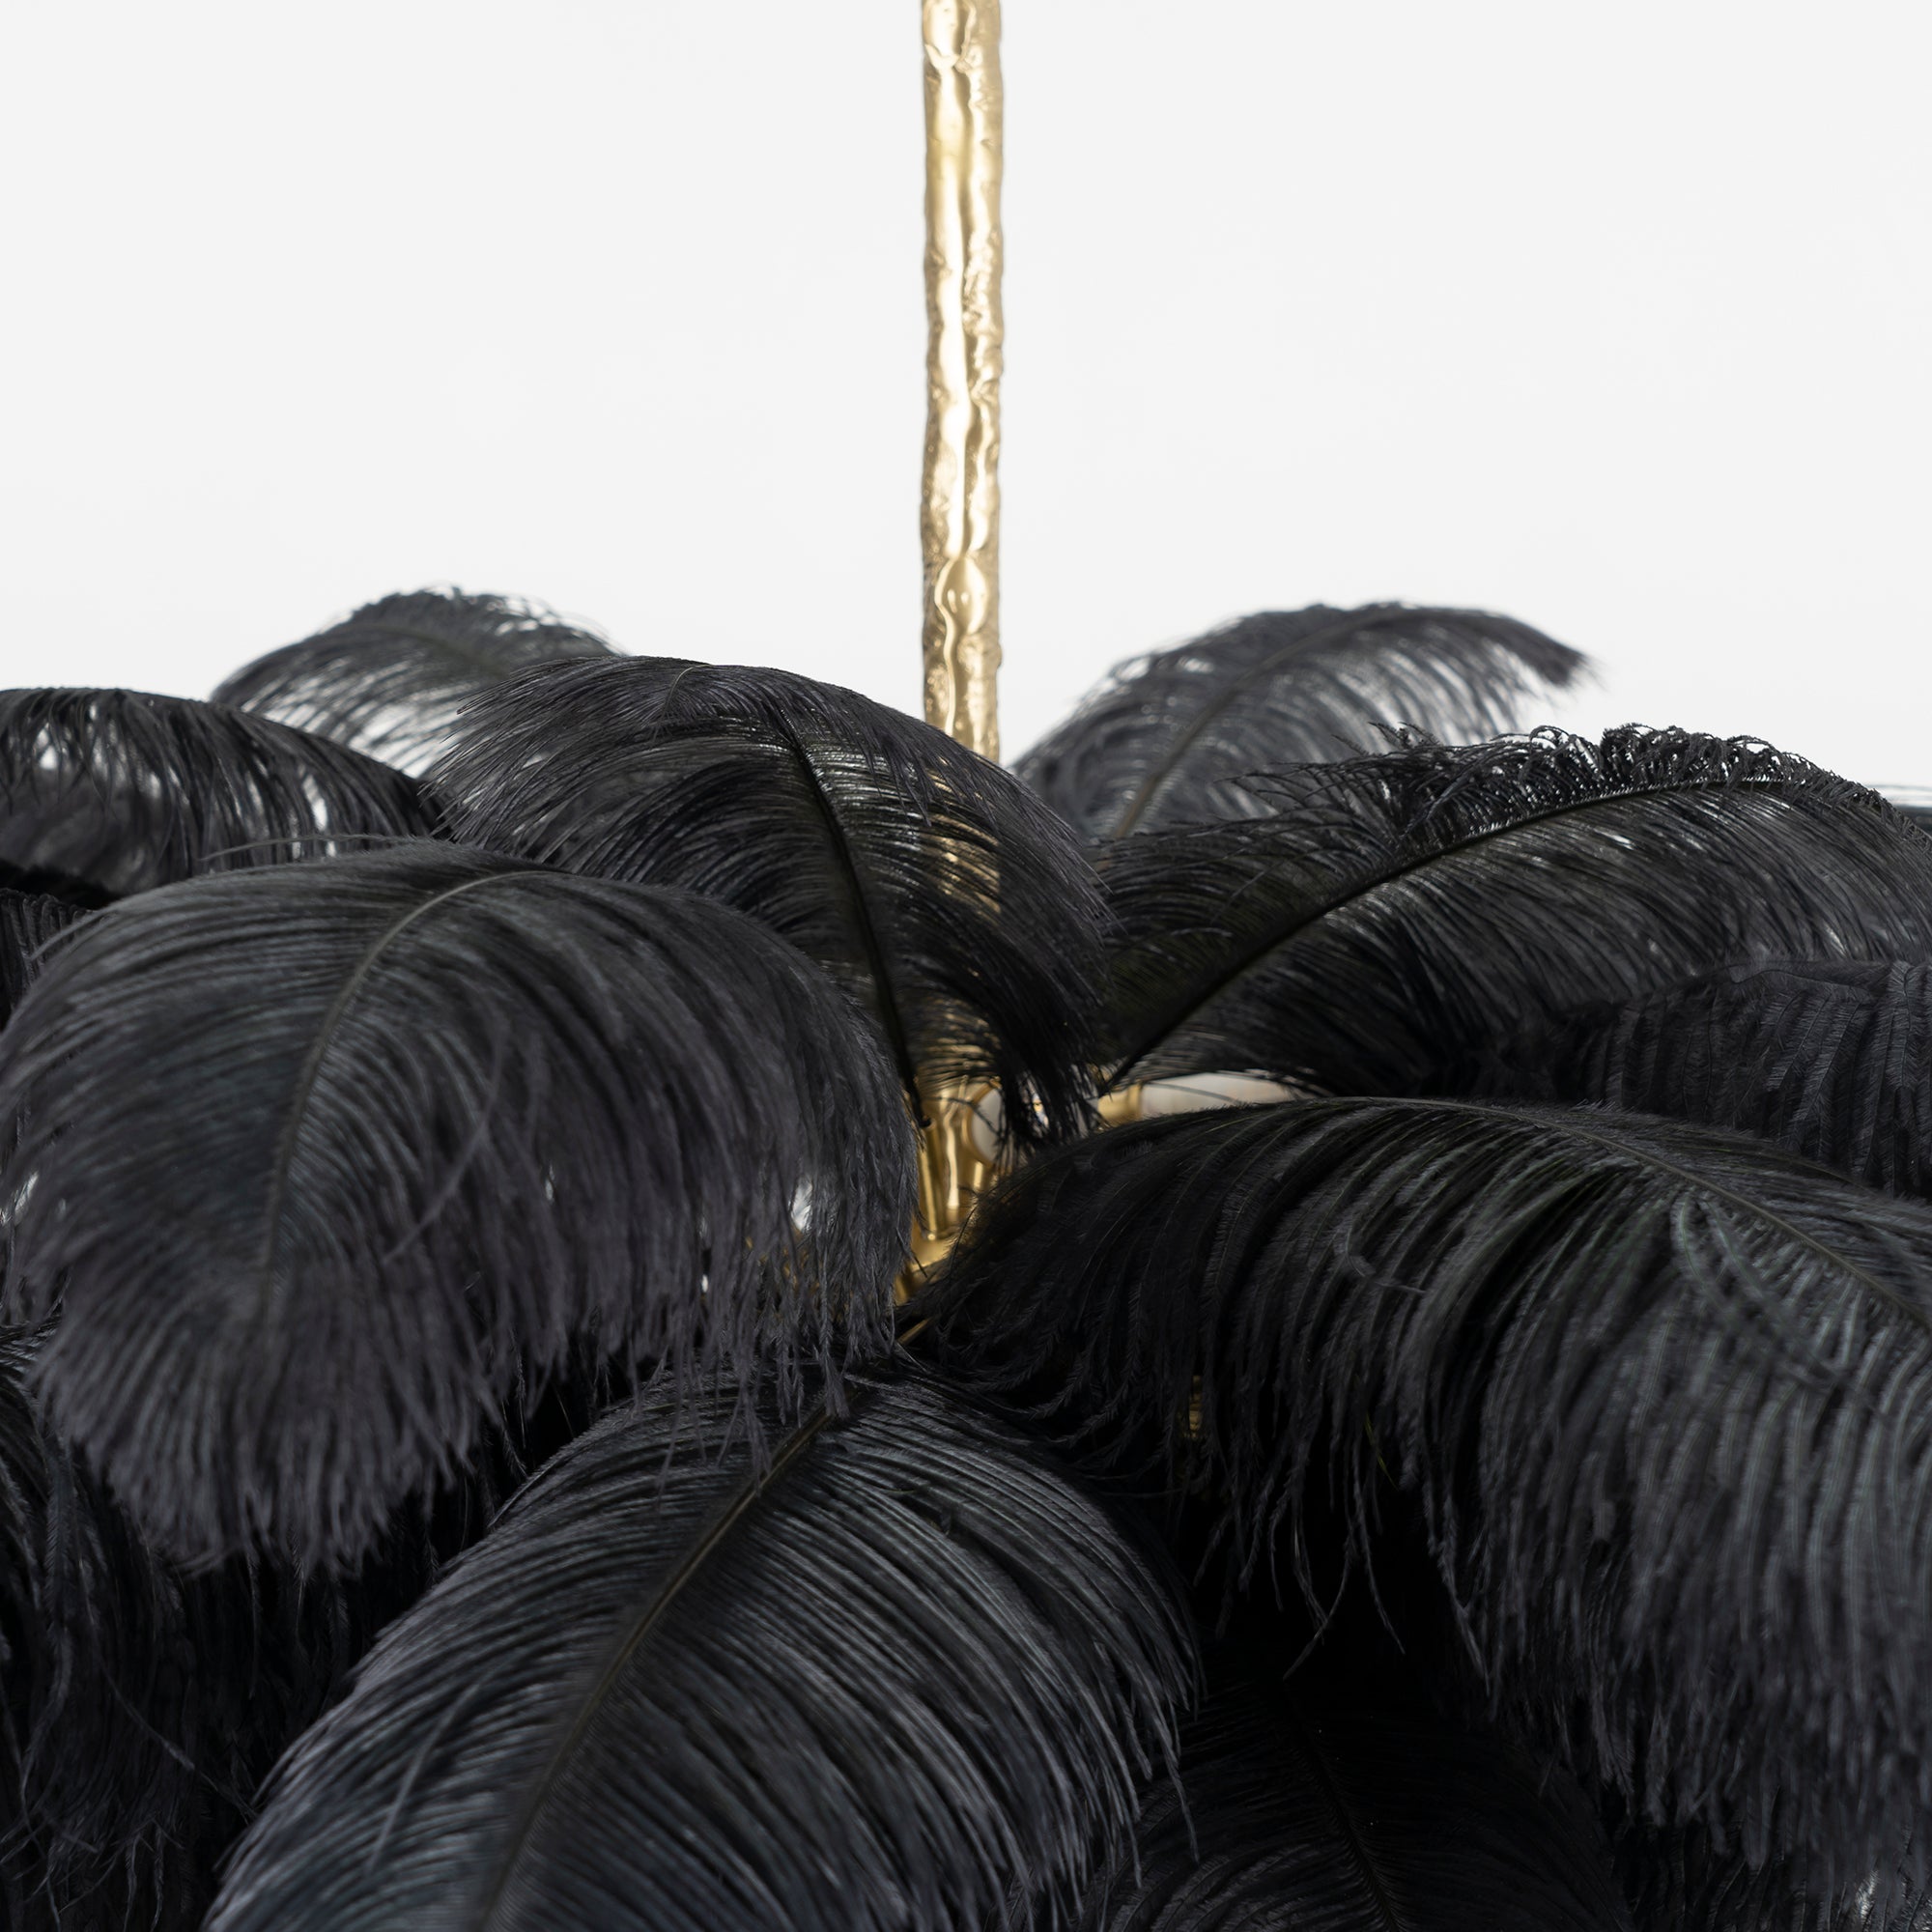 Candelabros de plumas de avestruz